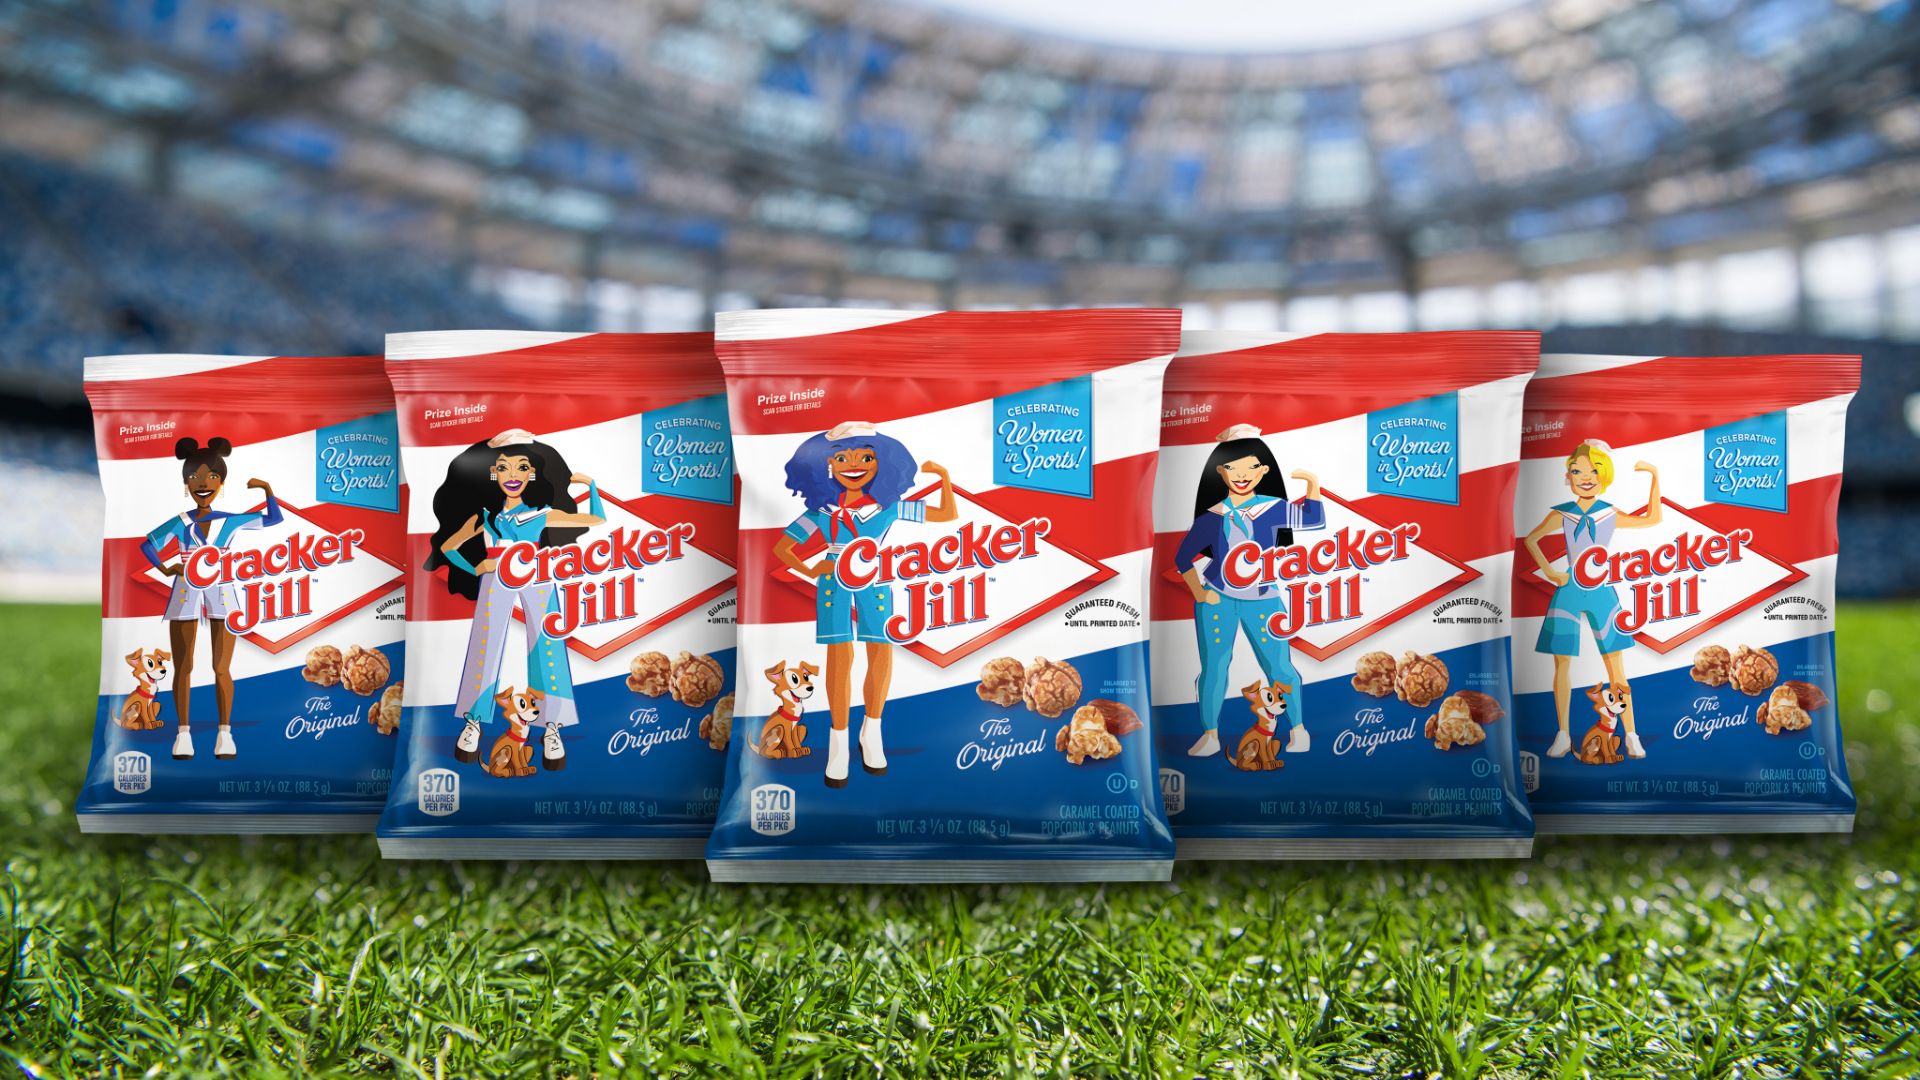 Cracker Jill bags up close on baseball field